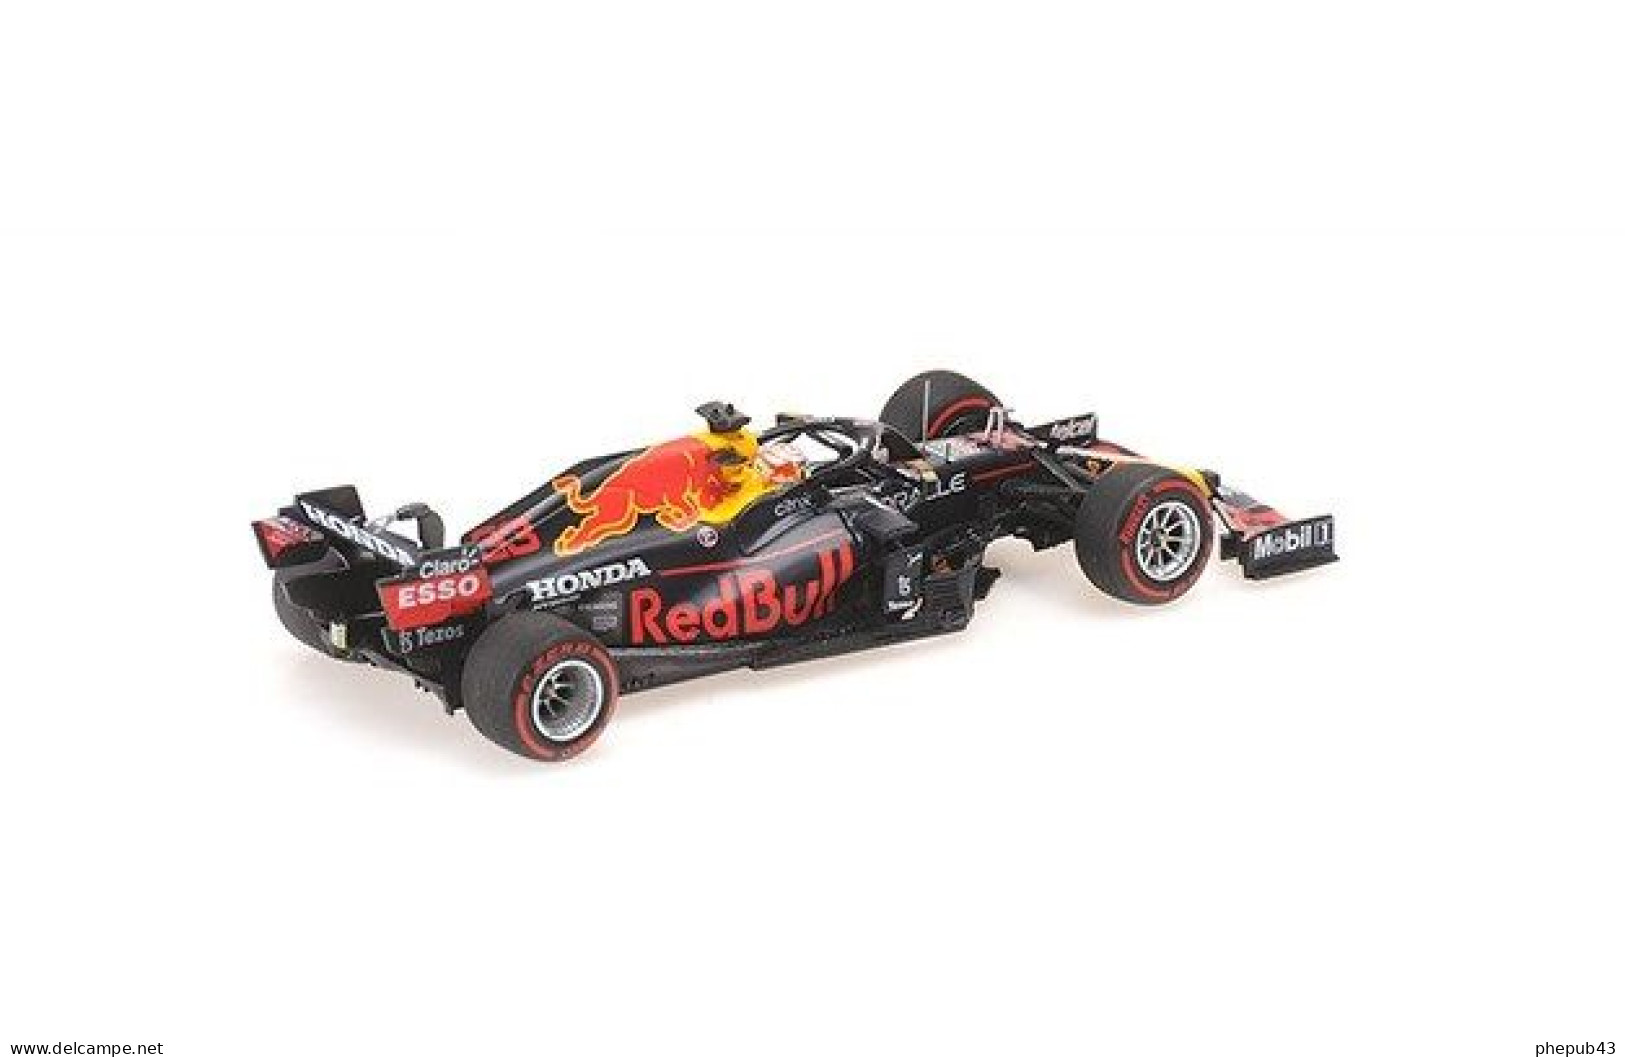 Red Bull Honda RB16B - Max Verstappen - 1st Monaco GP FI 2021 #33 - Minichamps - Minichamps